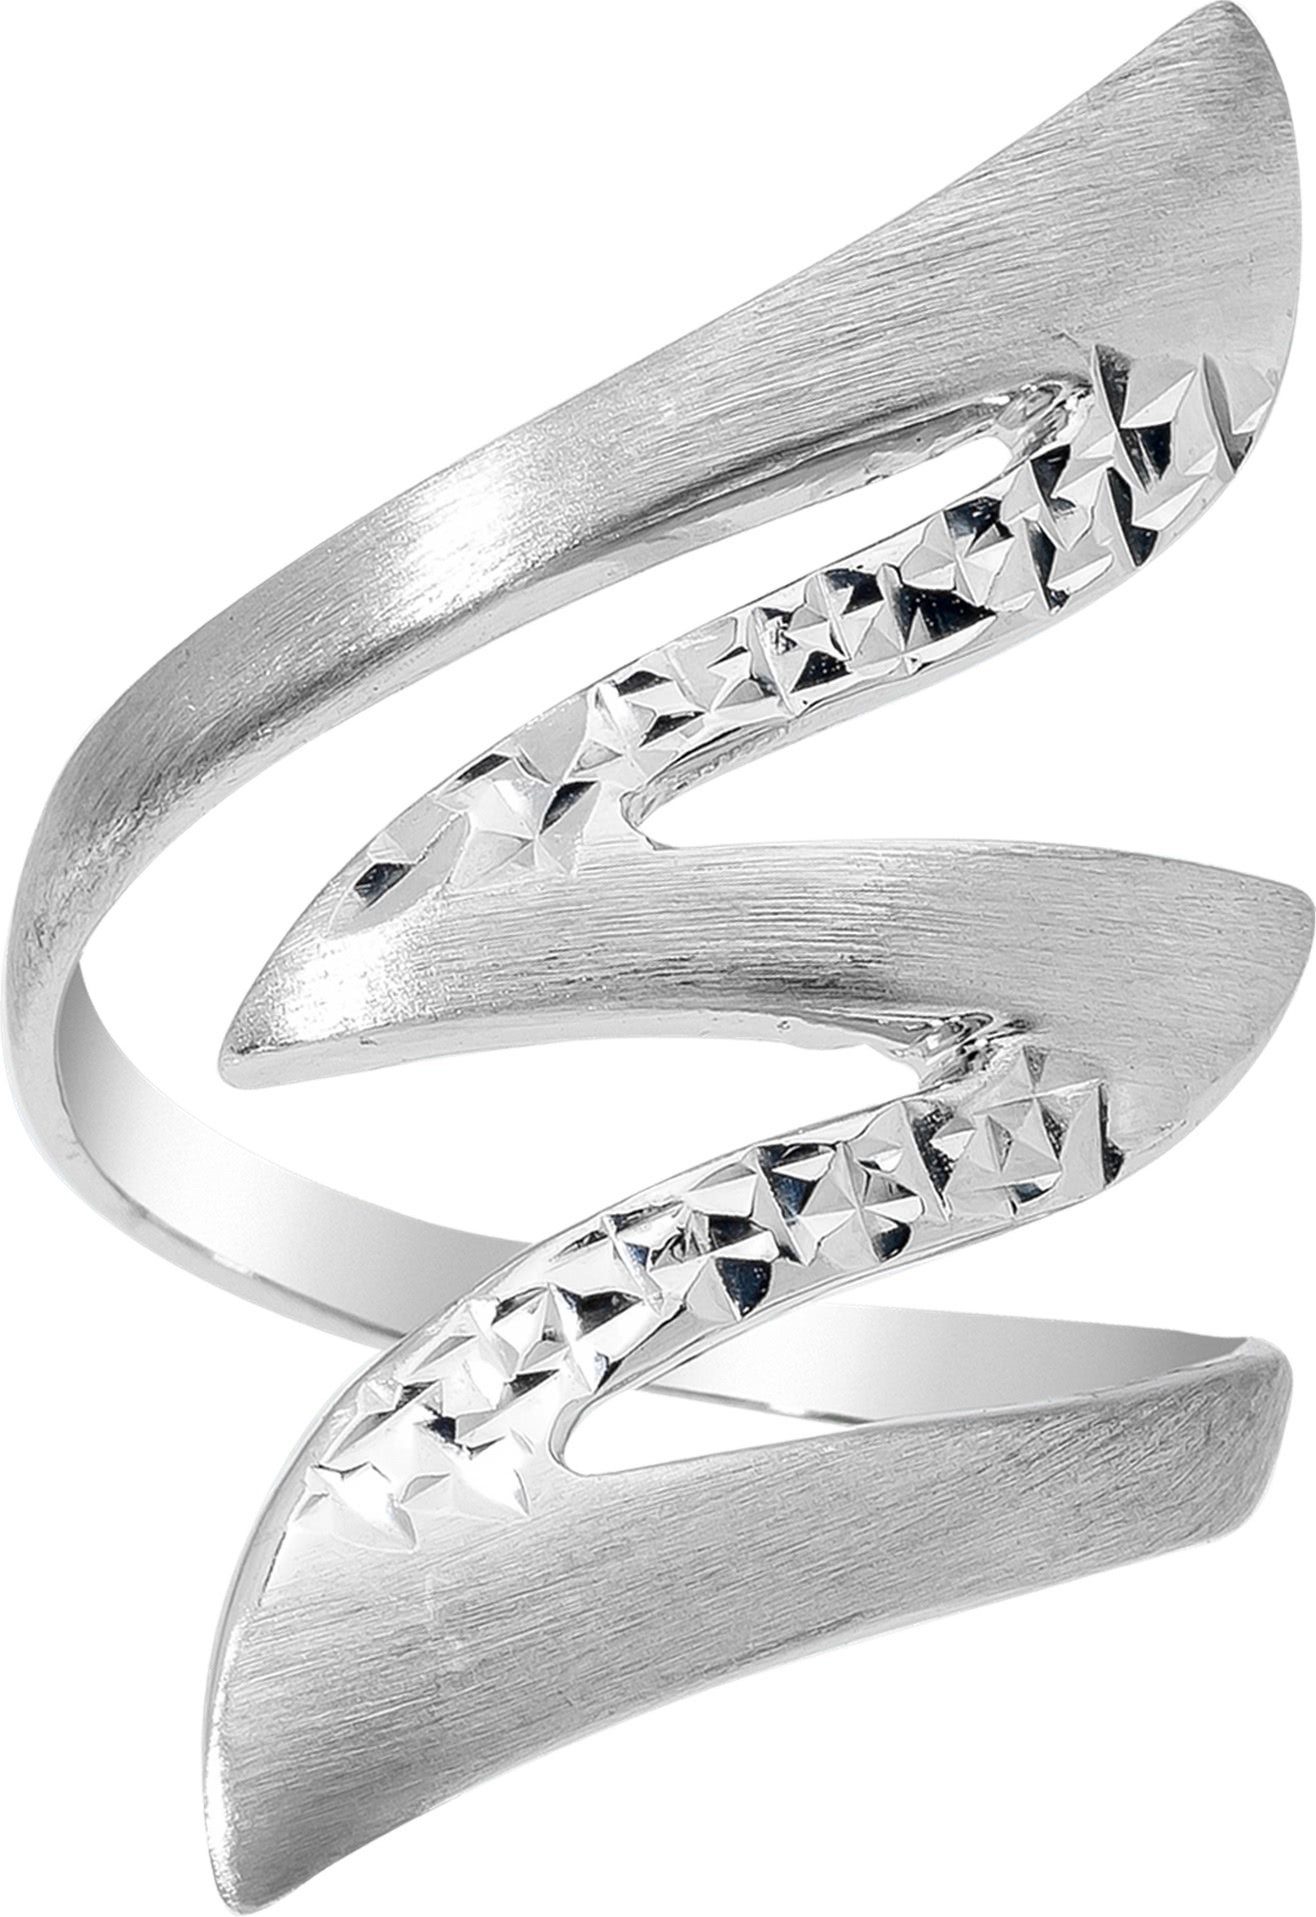 Balia Silberring Balia Ring für Damen mit diamantierter (Fingerring), Fingerring Größe 56 (17,8), 925 Sterling Silber (Blitz) Silber 925